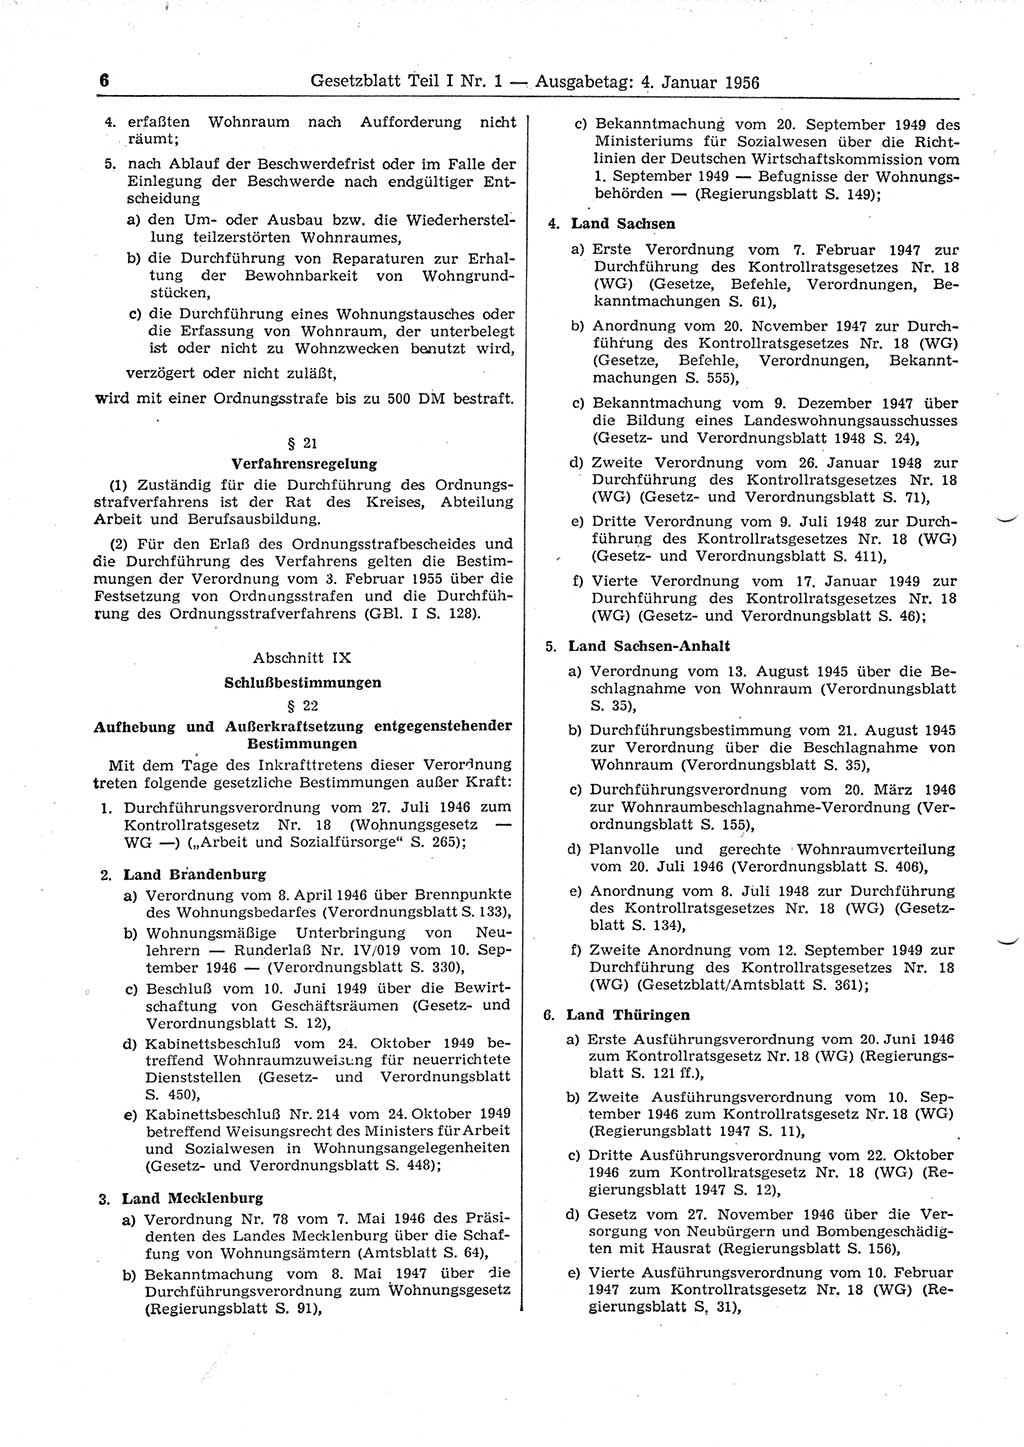 Gesetzblatt (GBl.) der Deutschen Demokratischen Republik (DDR) Teil Ⅰ 1956, Seite 6 (GBl. DDR Ⅰ 1956, S. 6)